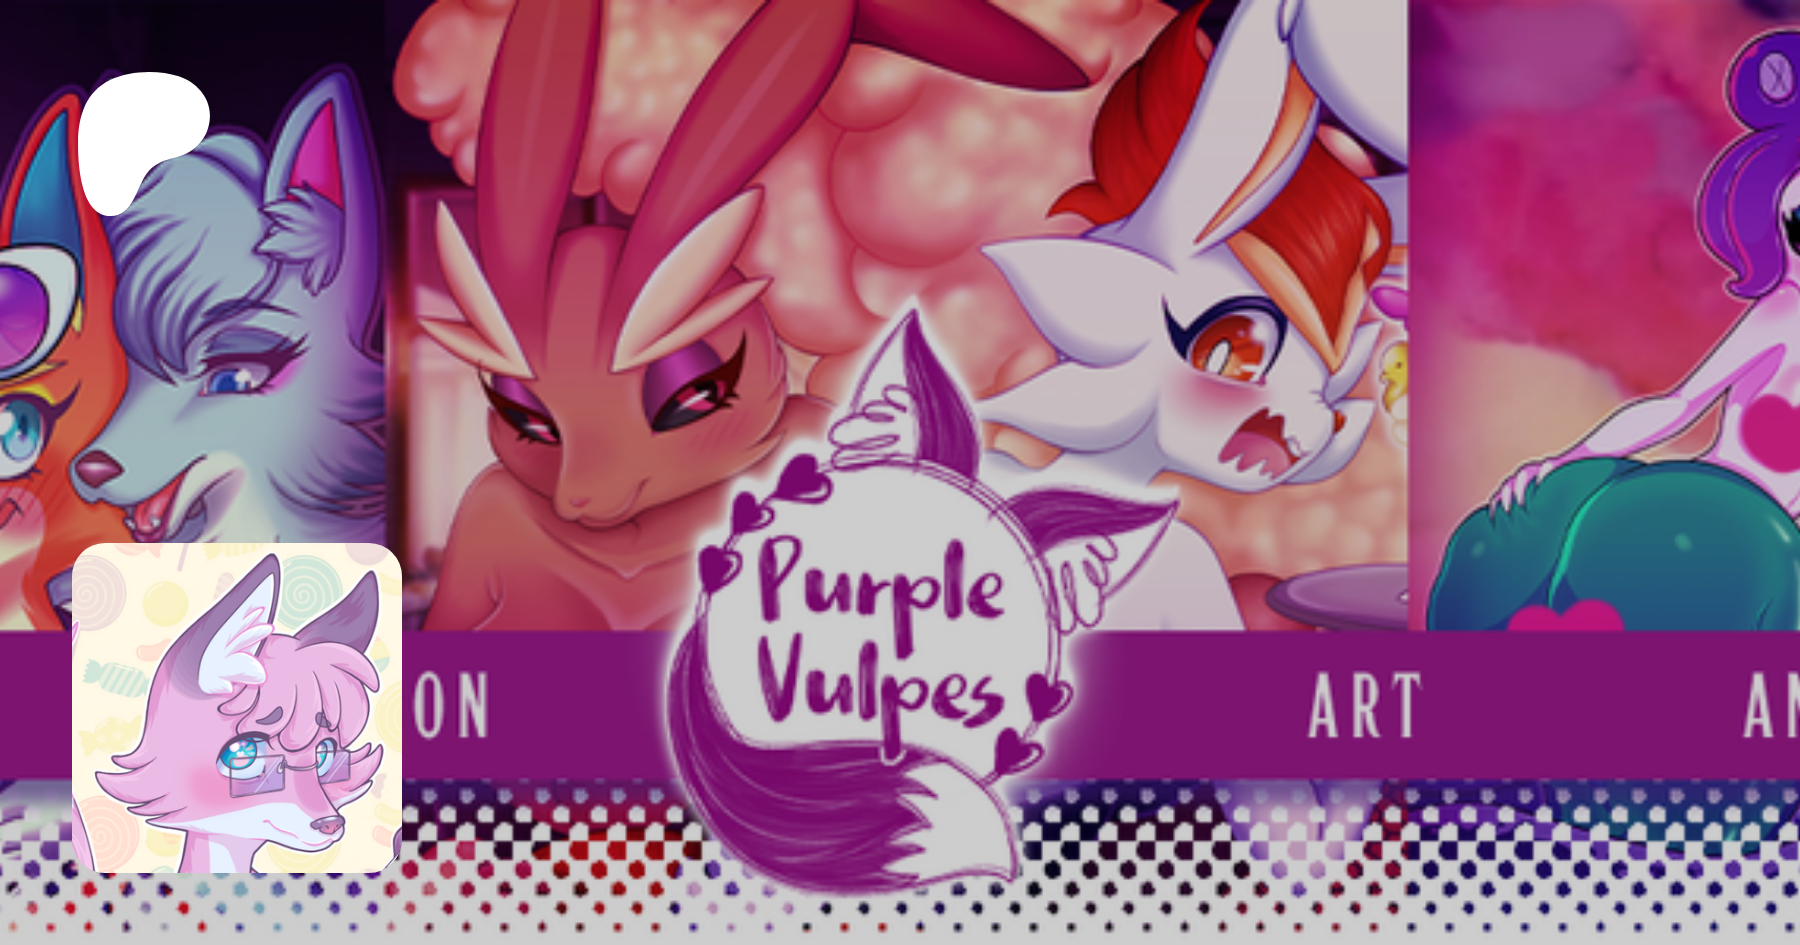 Purple vulpes